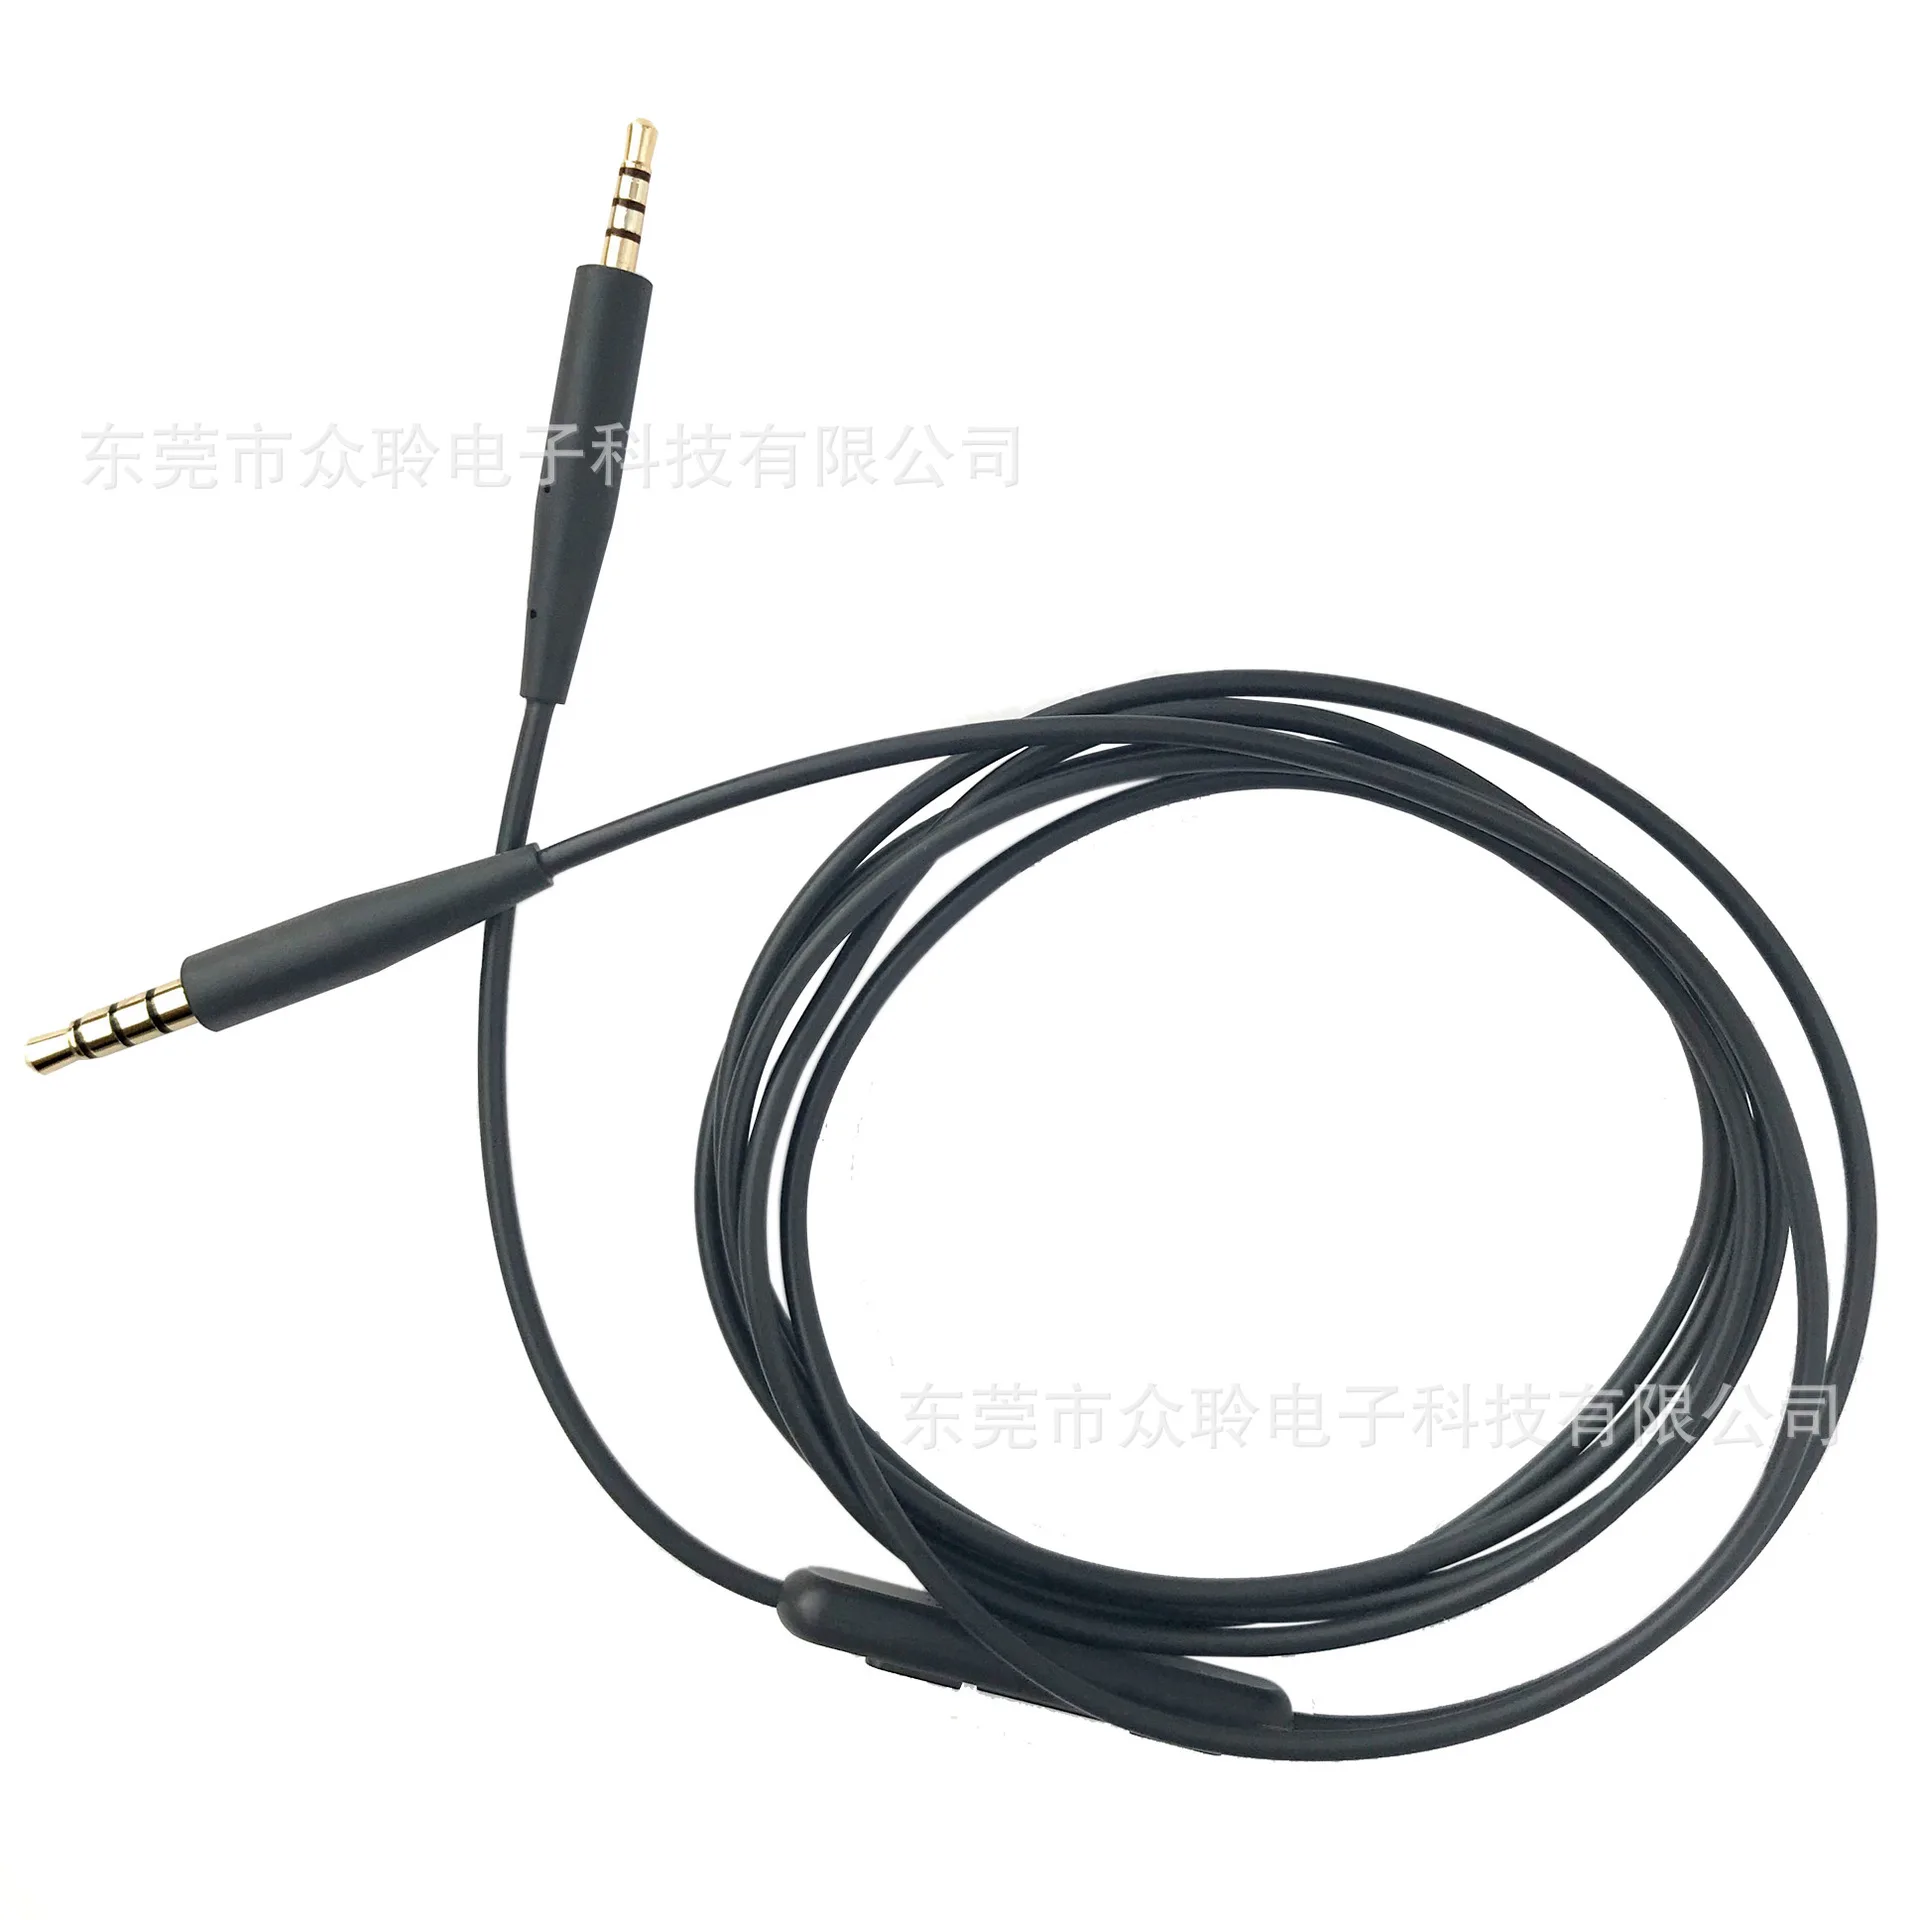 3,5 мм до 2,5 мм Шнур для гарнитуры Сменный кабель для BOSE QC25 QC35 SoundTrue/link OE2/OE2I кабель для наушников ST аудио кабель